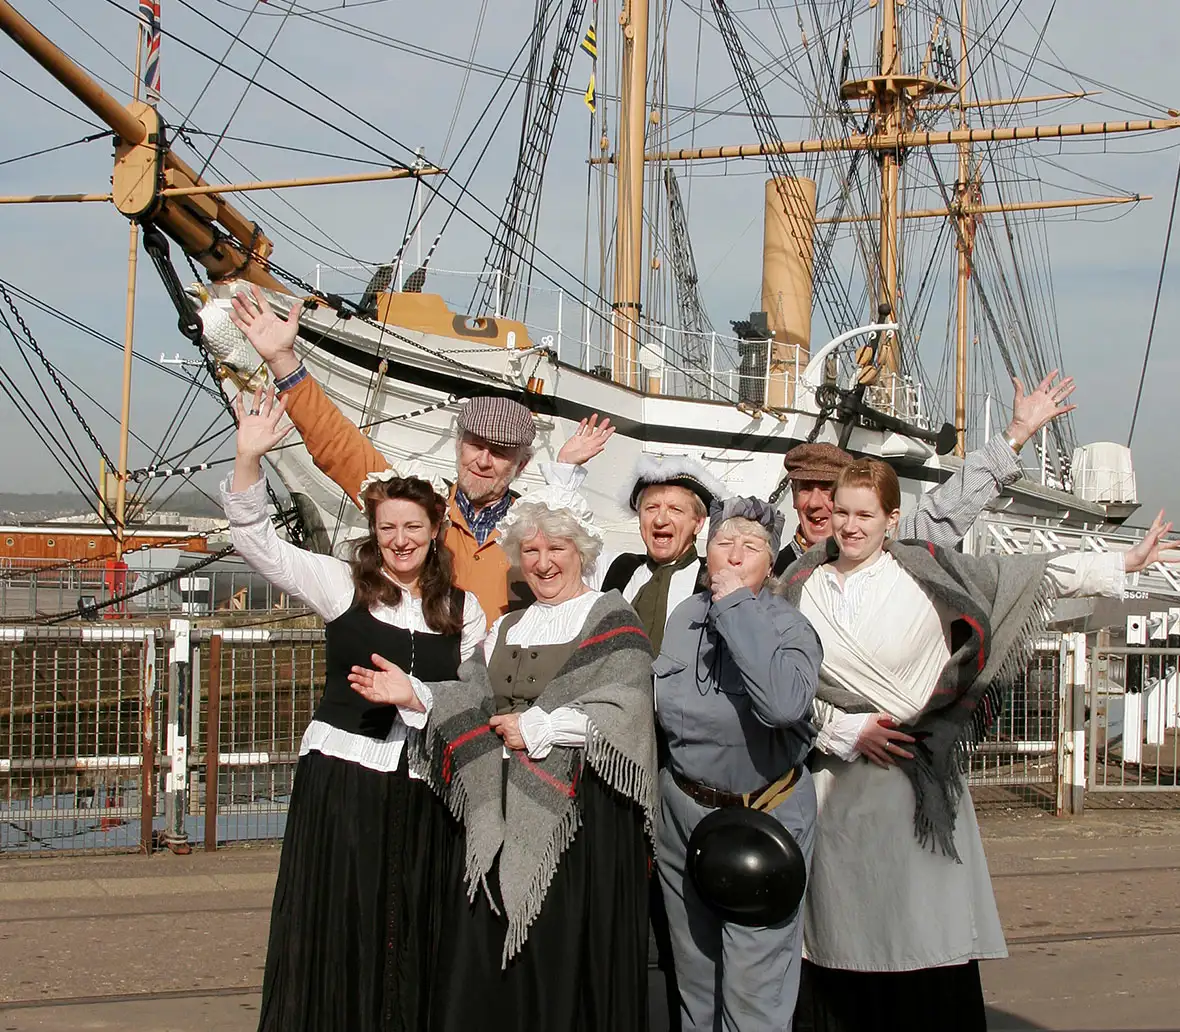 Groep mensen in negentiende-eeuwse kleding poseert voor een historisch zeilschip